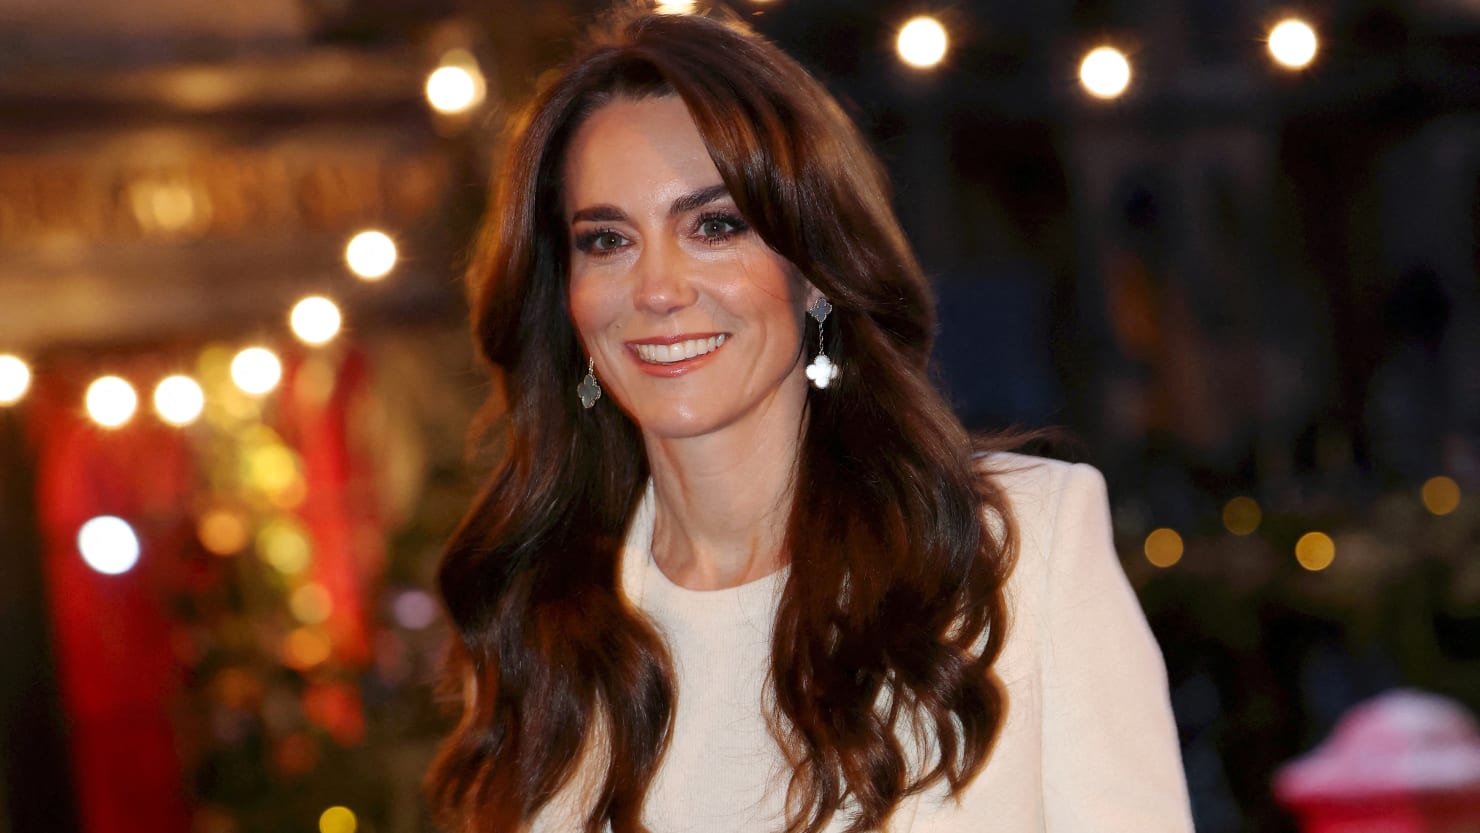 A Palace leállítja azokat az állításokat, amelyek szerint Kate Middleton kómában volt, a halál küszöbén